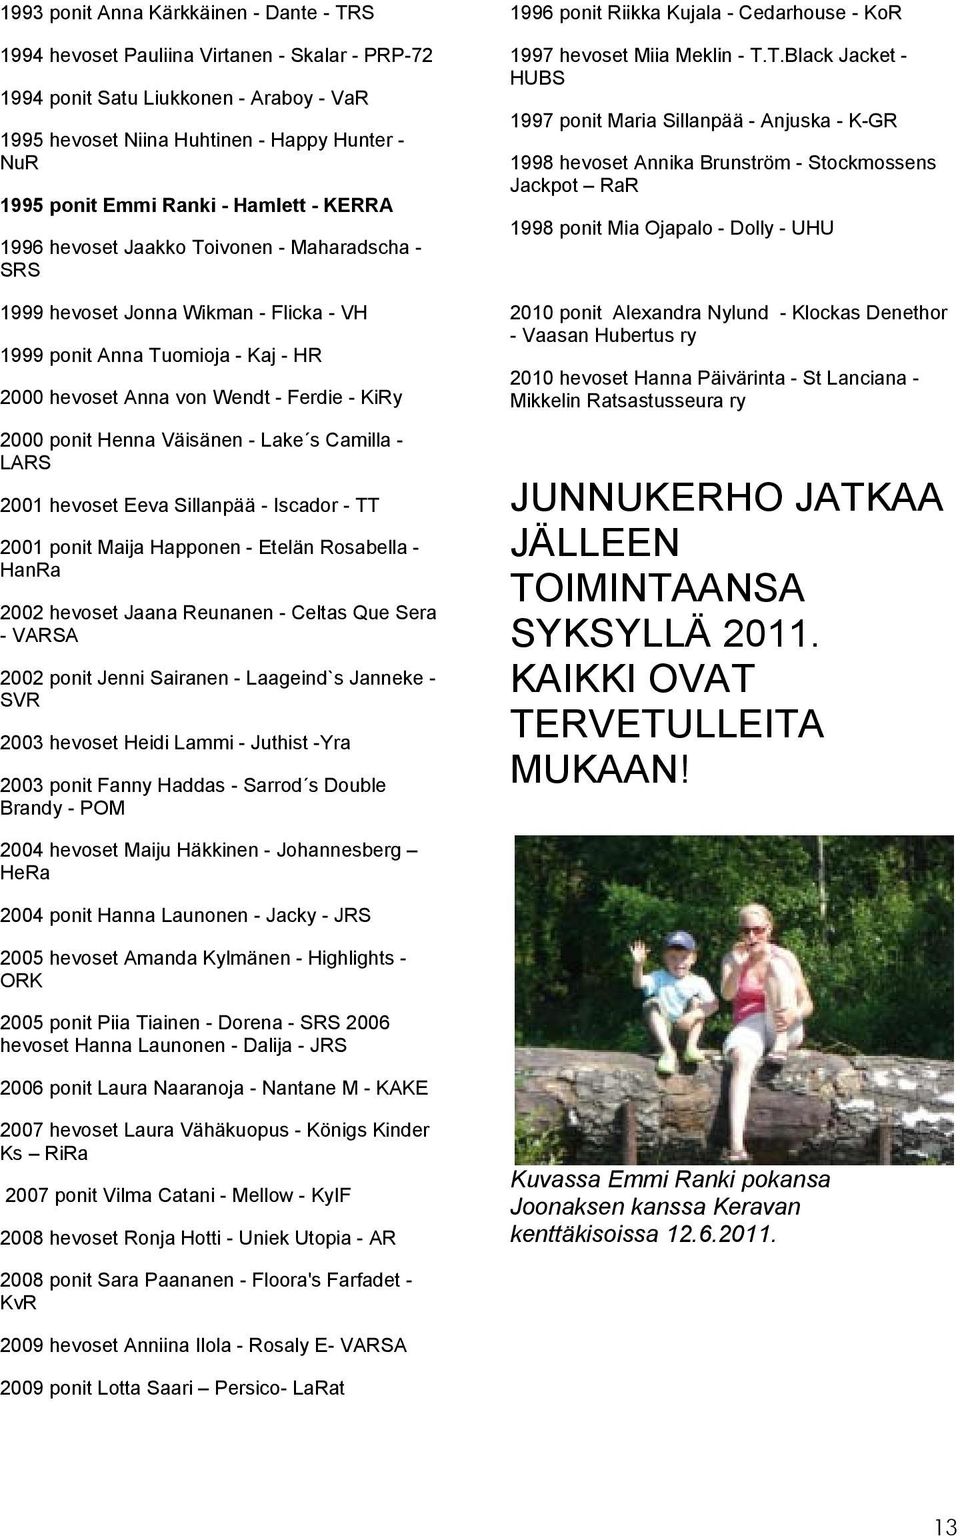 ponit Henna Väisänen - Lake s Camilla - LARS 2001 hevoset Eeva Sillanpää - Iscador - TT 2001 ponit Maija Happonen - Etelän Rosabella - HanRa 2002 hevoset Jaana Reunanen - Celtas Que Sera - VARSA 2002